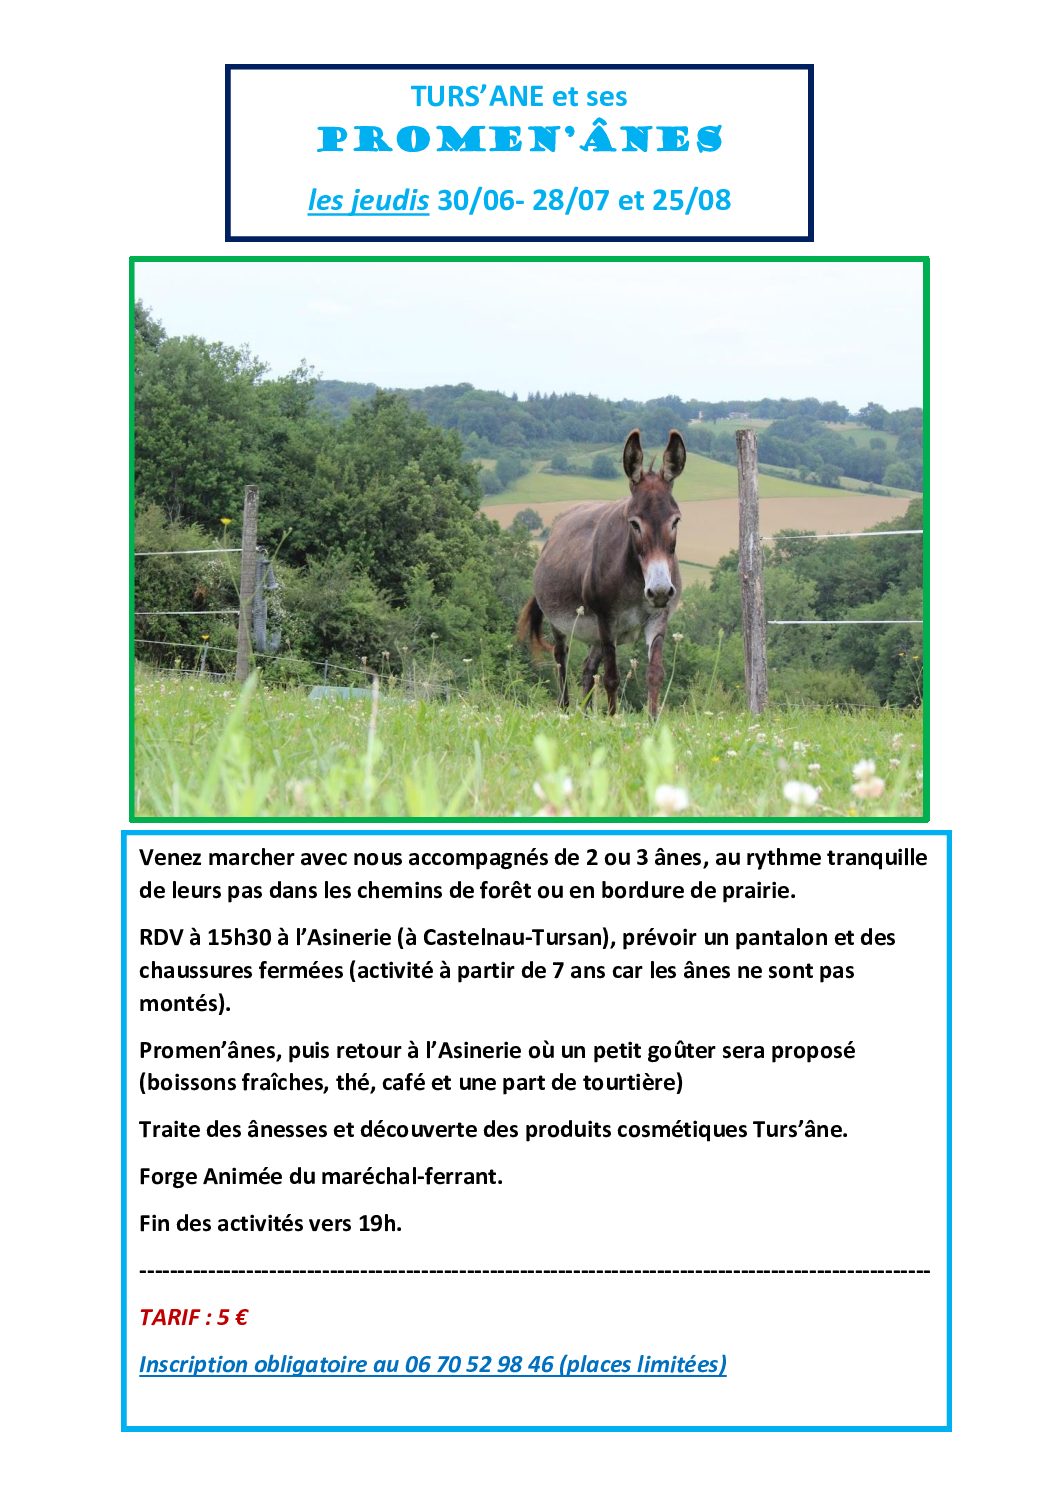 Nouveautés cet été: les Promen’ânes ! 30 juin, 28 juillet et 25 août, promenade dans les bois aux pas des ânes et retour à l’Asinerie pour la visite accompagnée d’un goûter. Appelez-moi au 06 70 52 98 46 pour informations et réservations (tarif : 5€)